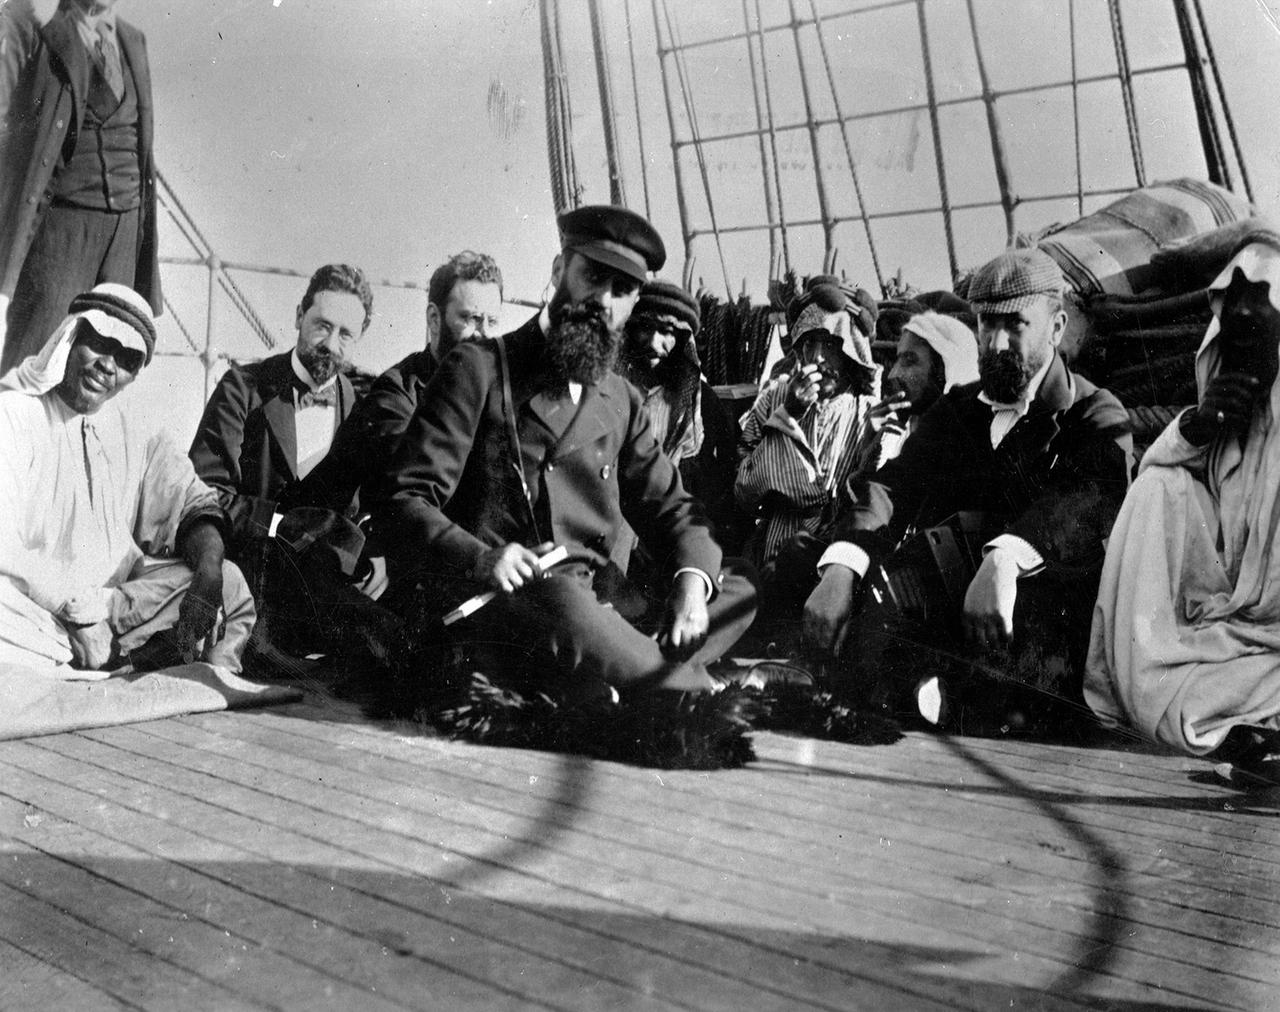 Der ungarisch-jüdische Schriftsteller Theodor Herzl sitzt auf dem Boden eines Bootes und ist umringt von anderen Menschen